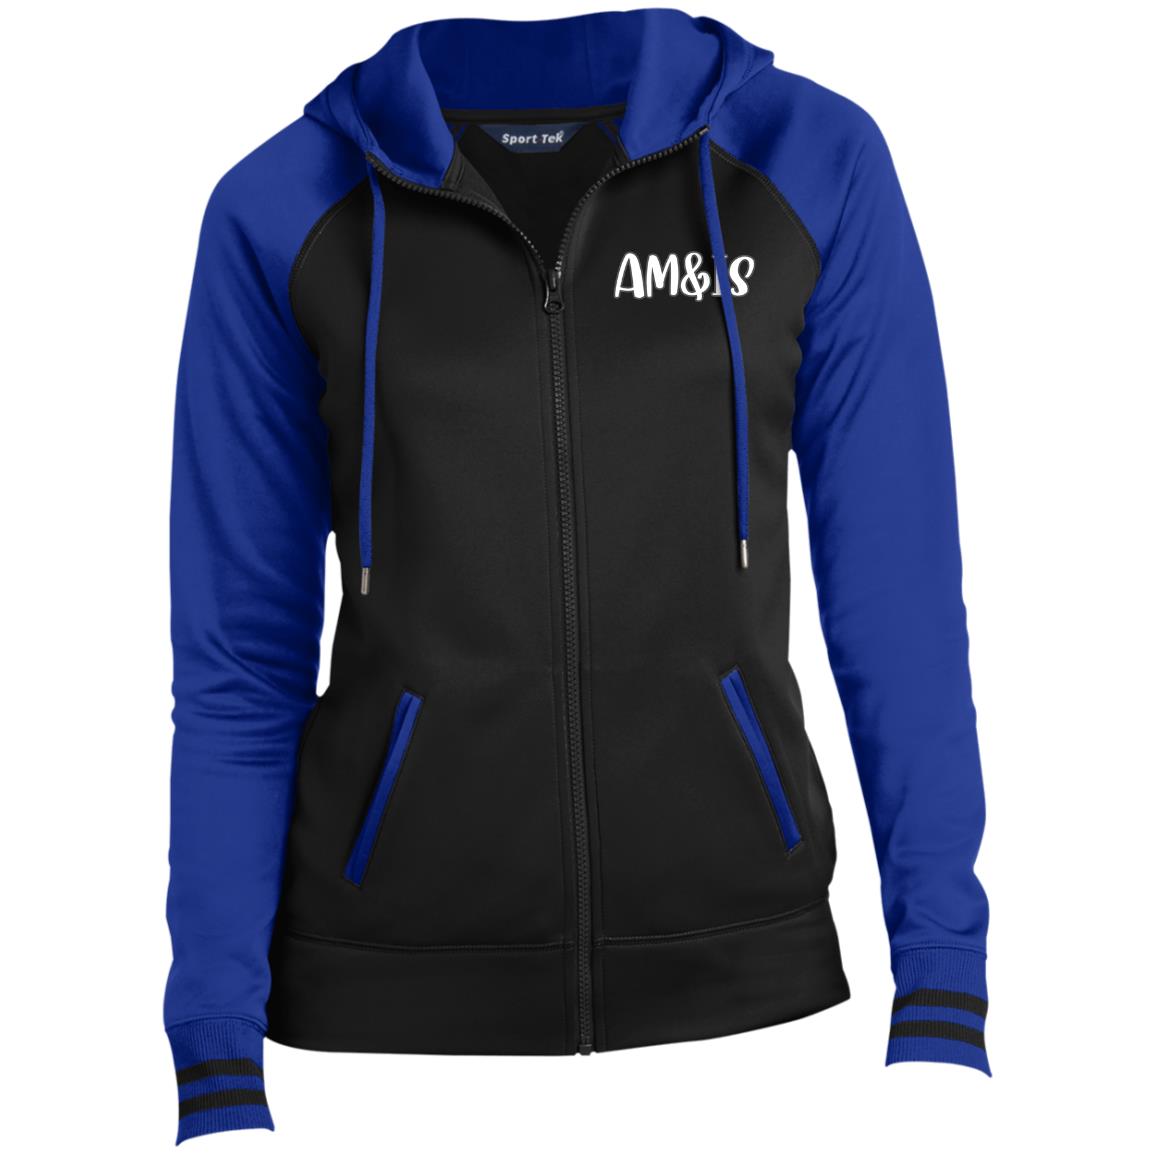 BLACK TRUE ROYAL - AM&IS Activewear Ladies' Sport-Wick® Full-Zip Hooded Jacket - womens jacket at TFC&H Co.